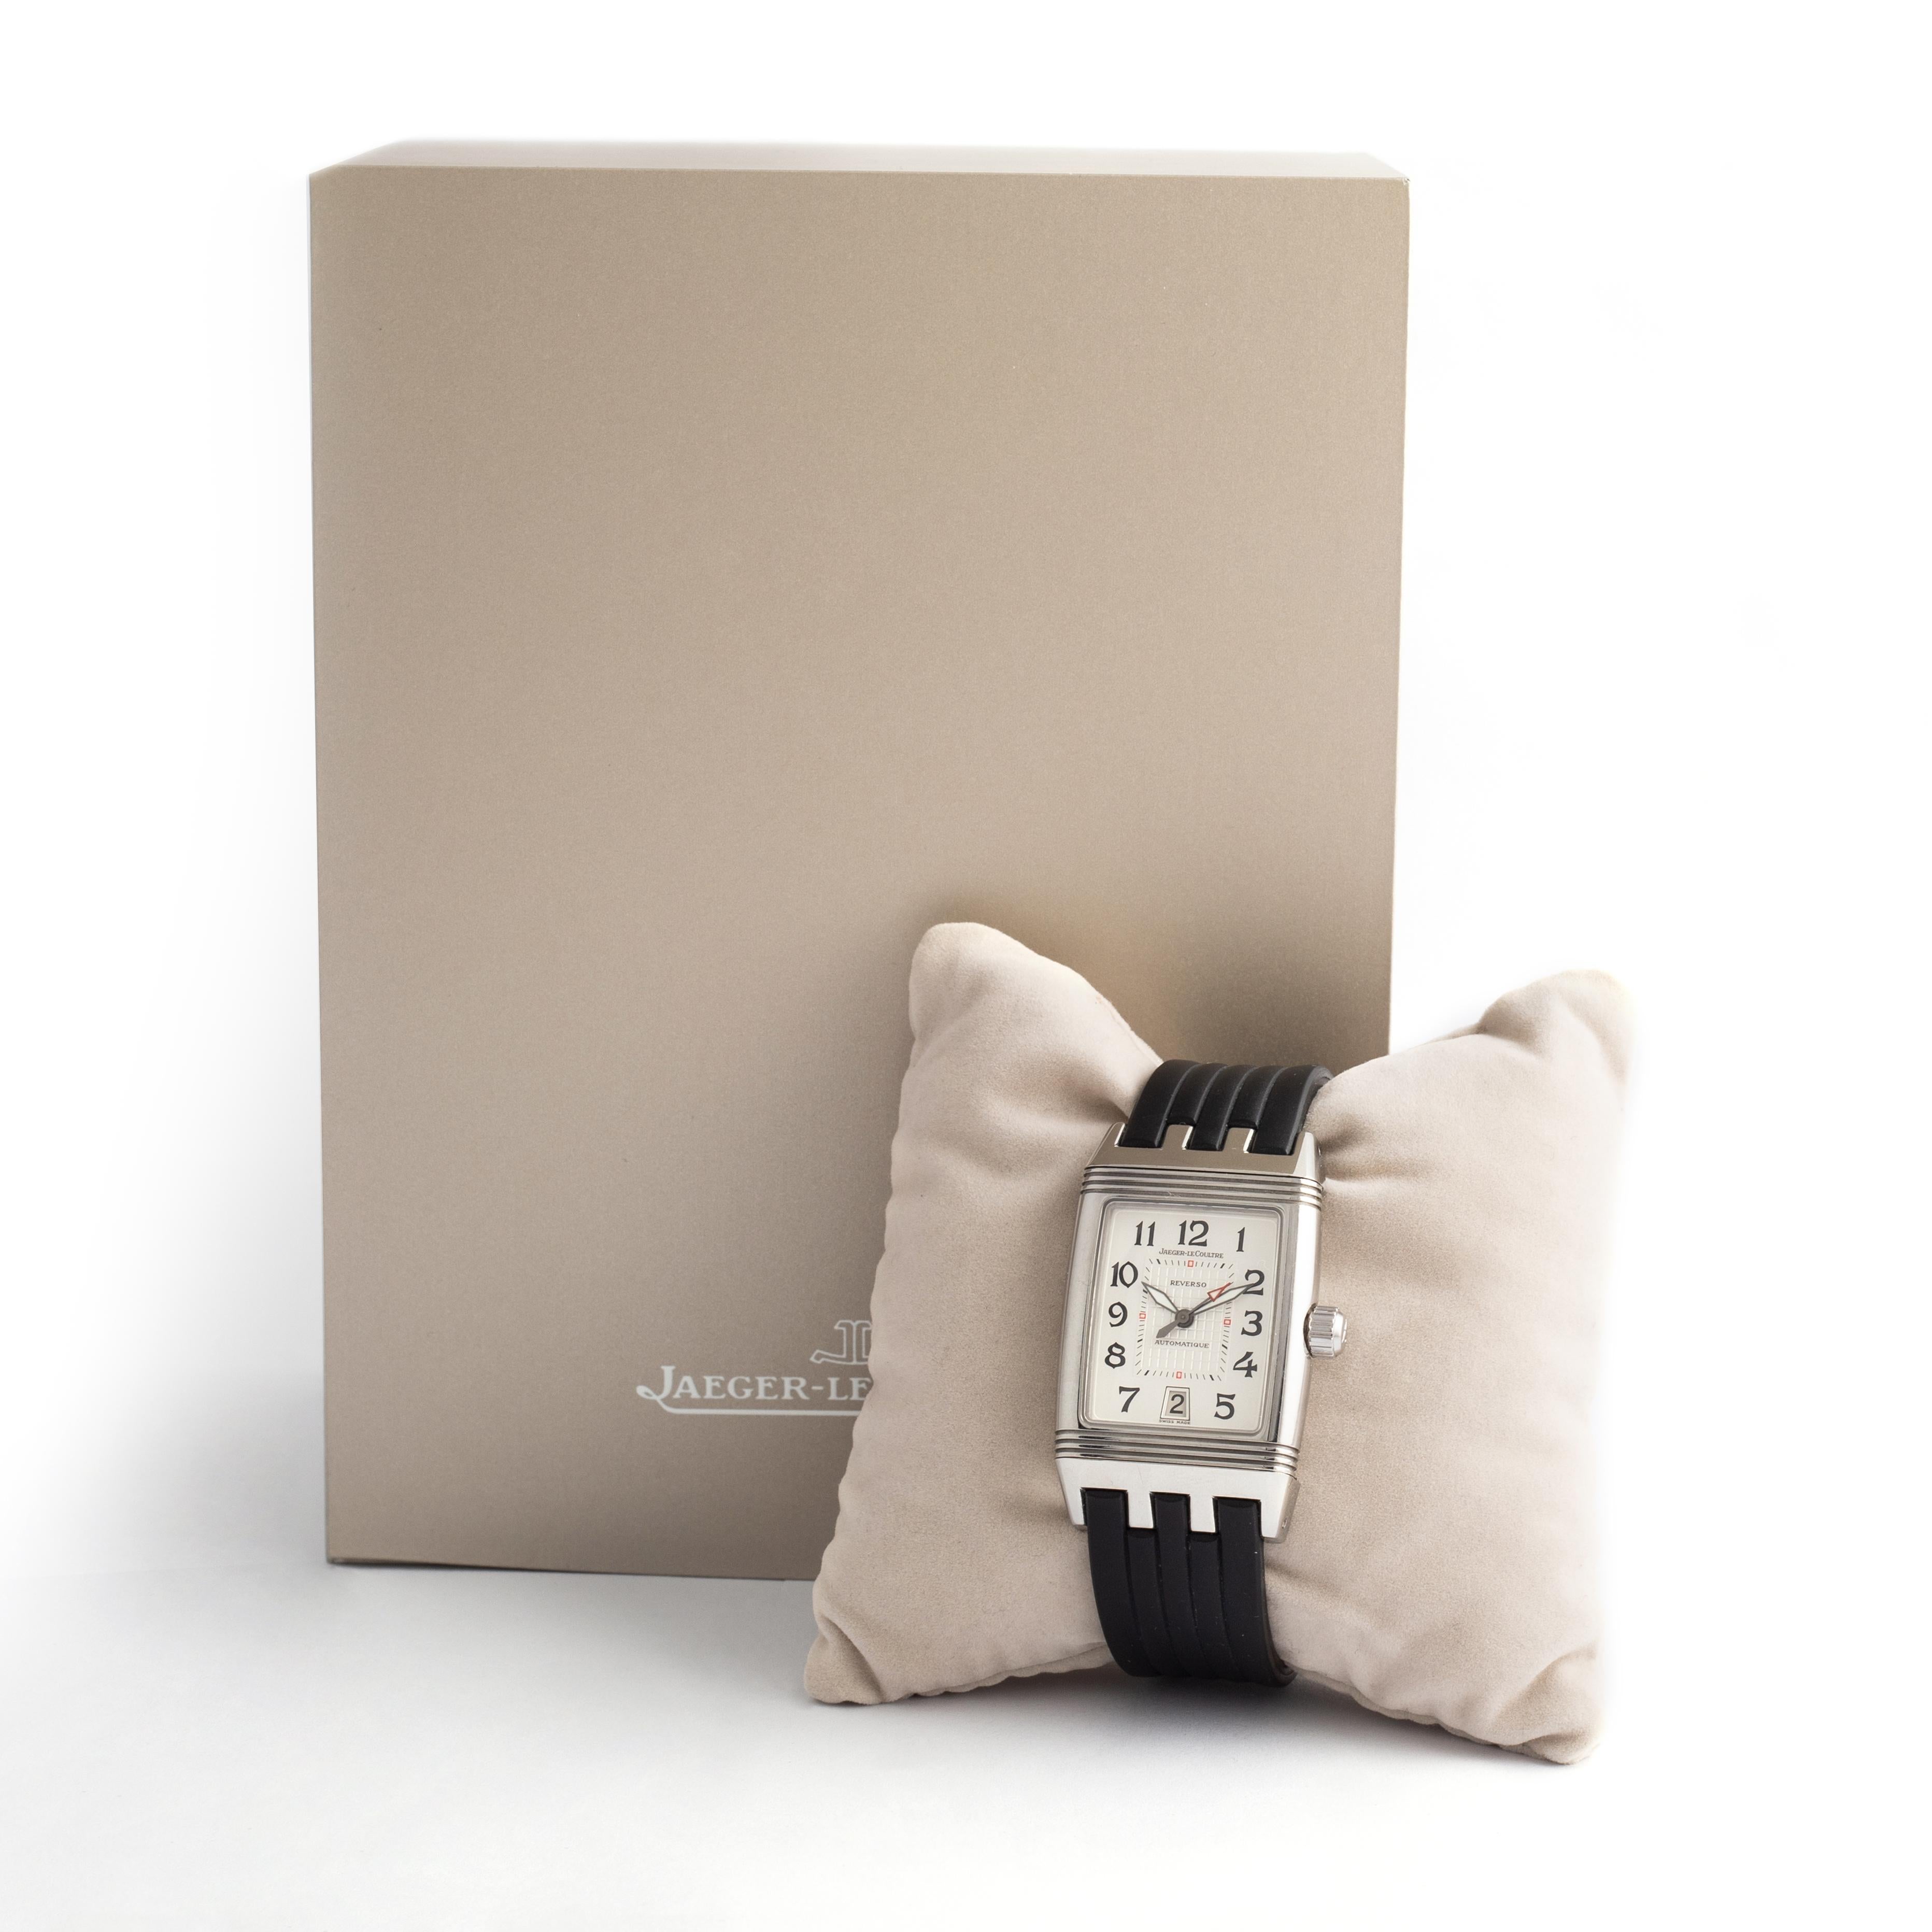 Jaeger-LeCoultre Reverso Gran'Sport Automatik Linto Stahl Armbanduhr.
Der anpassungsfähige Zeitmesser mit weißem Zifferblatt verfügt über ein Datumsfenster auf der 6-Uhr-Position und verwendet arabische Ziffern als Stundenmarkierungen.